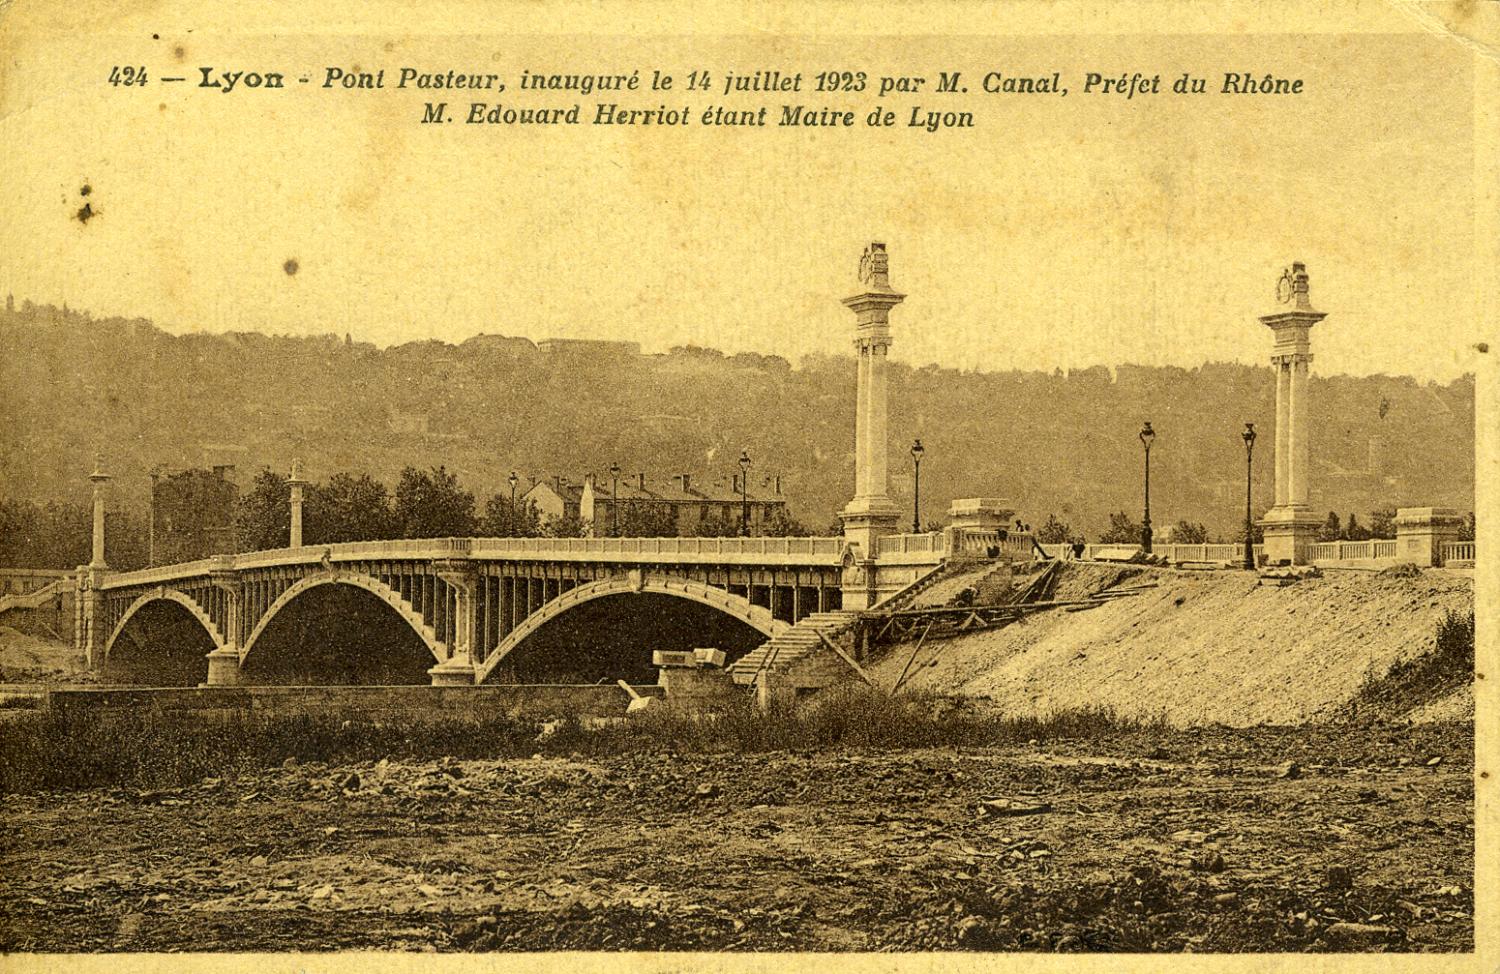 Lyon - Pont Pasteur, inauguré le 14 juillet 1923 par M. Canal, préfet du Rhône, M. Herriot étant Maire de Lyon